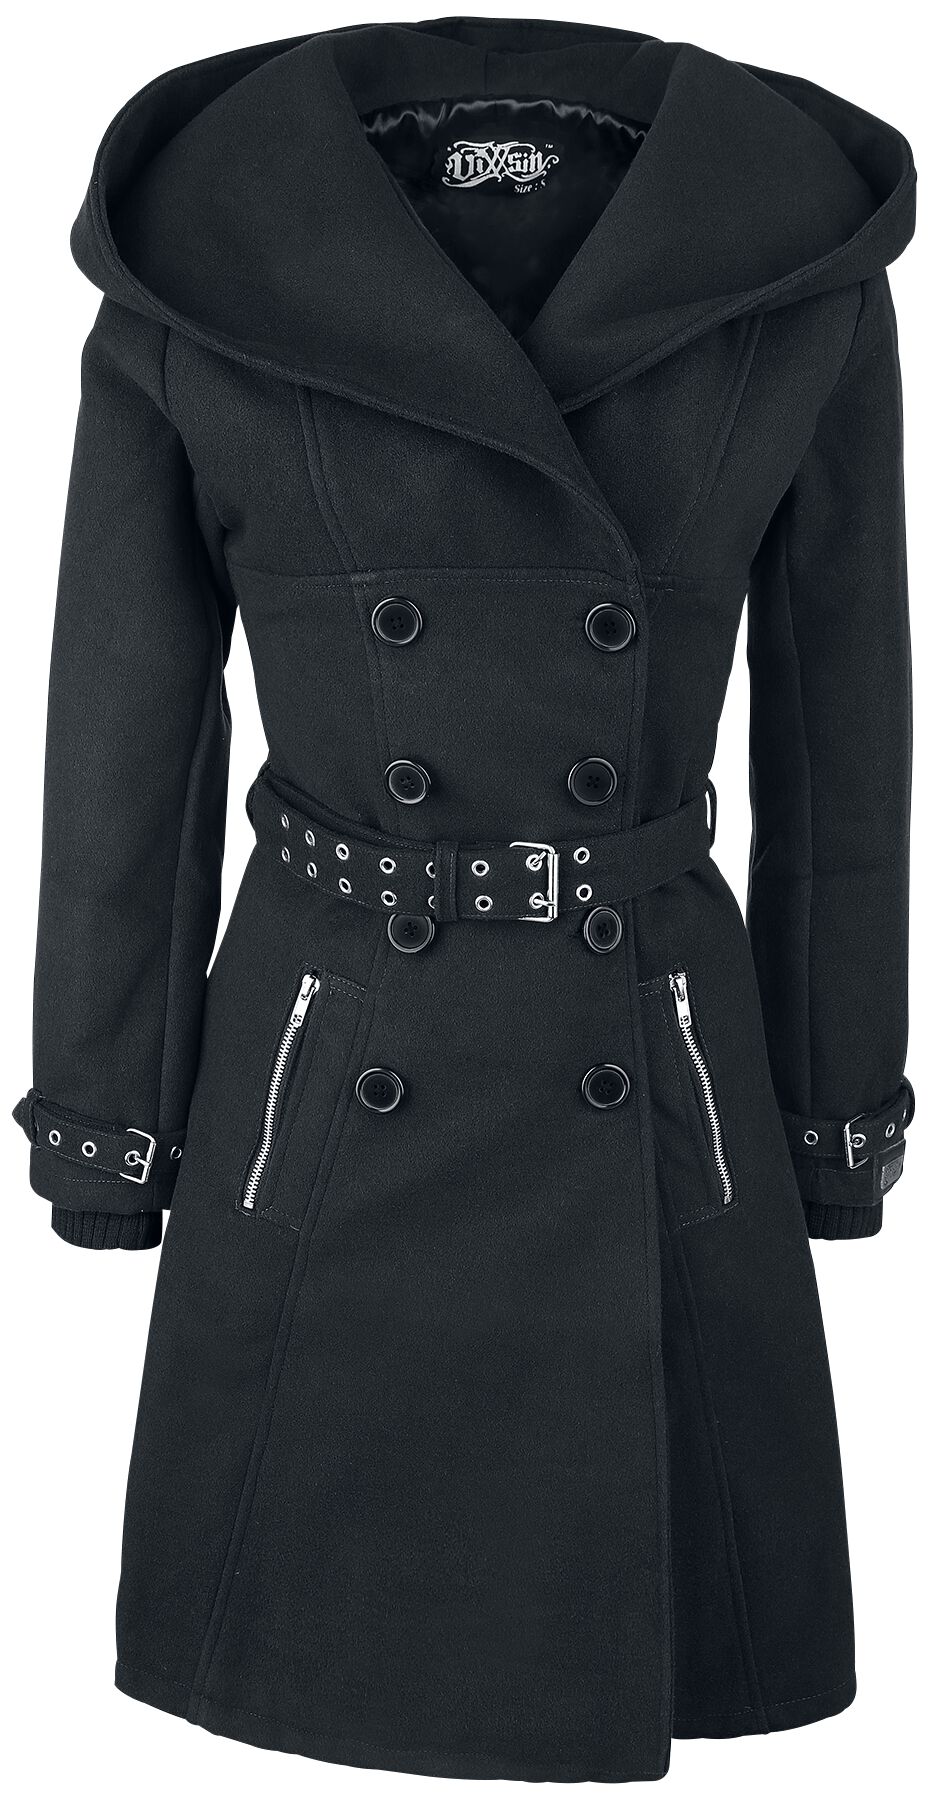 Manteau d'hiver de Vixxsin - Manteau Decay - S à 5XL - pour Femme - noir